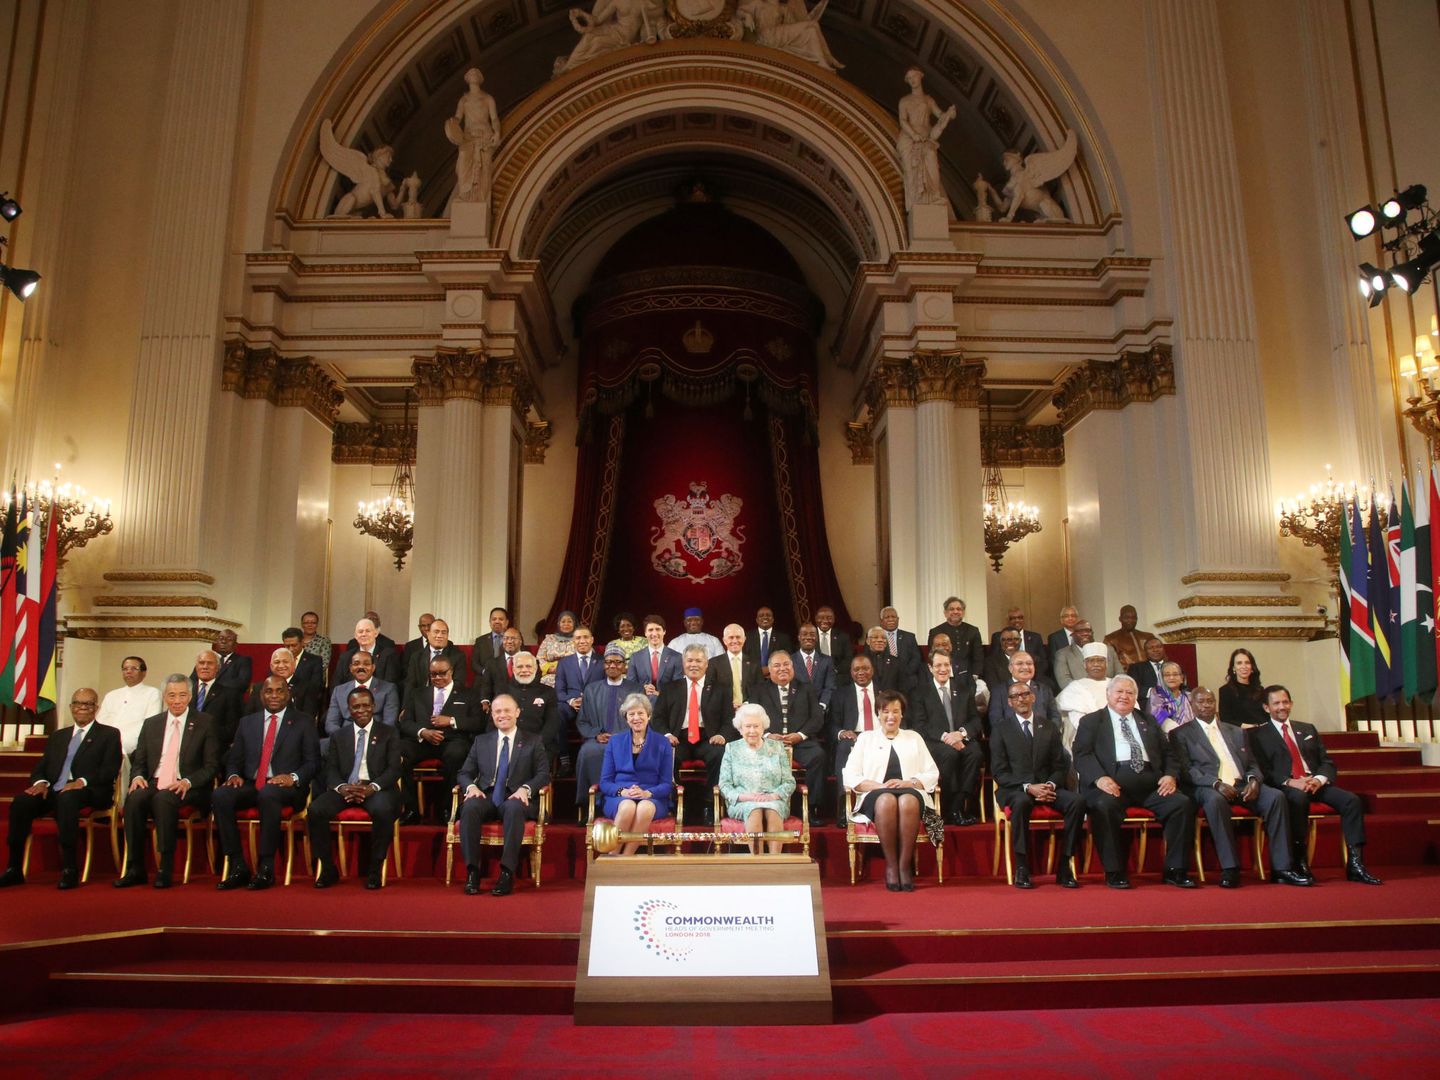 La reina, en una imagen con los líderes de los países de la Commonwealth. (Reuters)